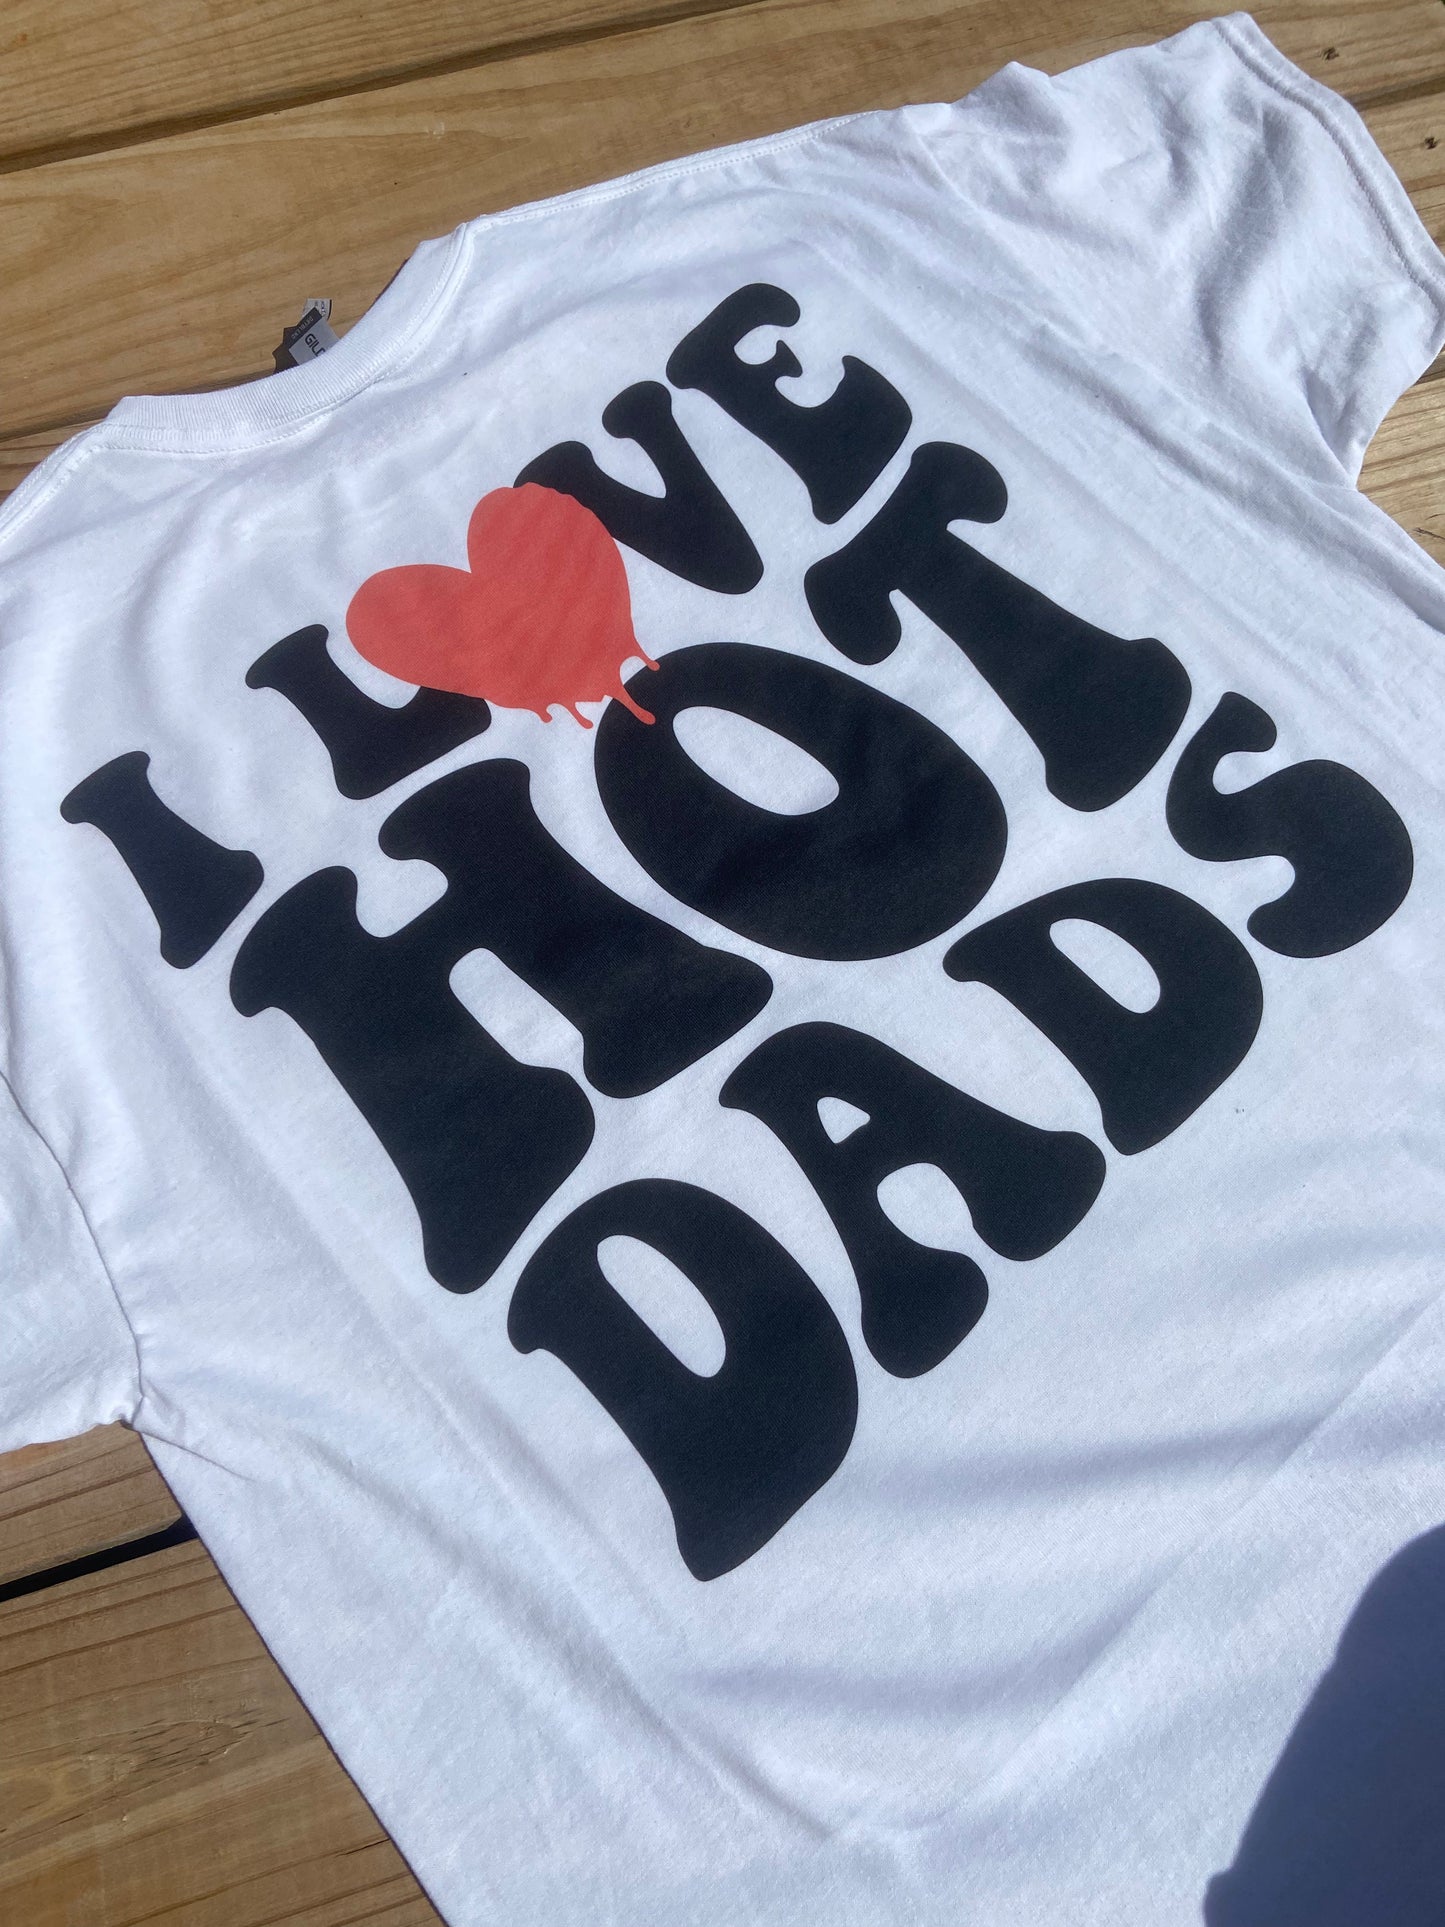 I Love Hot Dads Tee/Sweatshirt